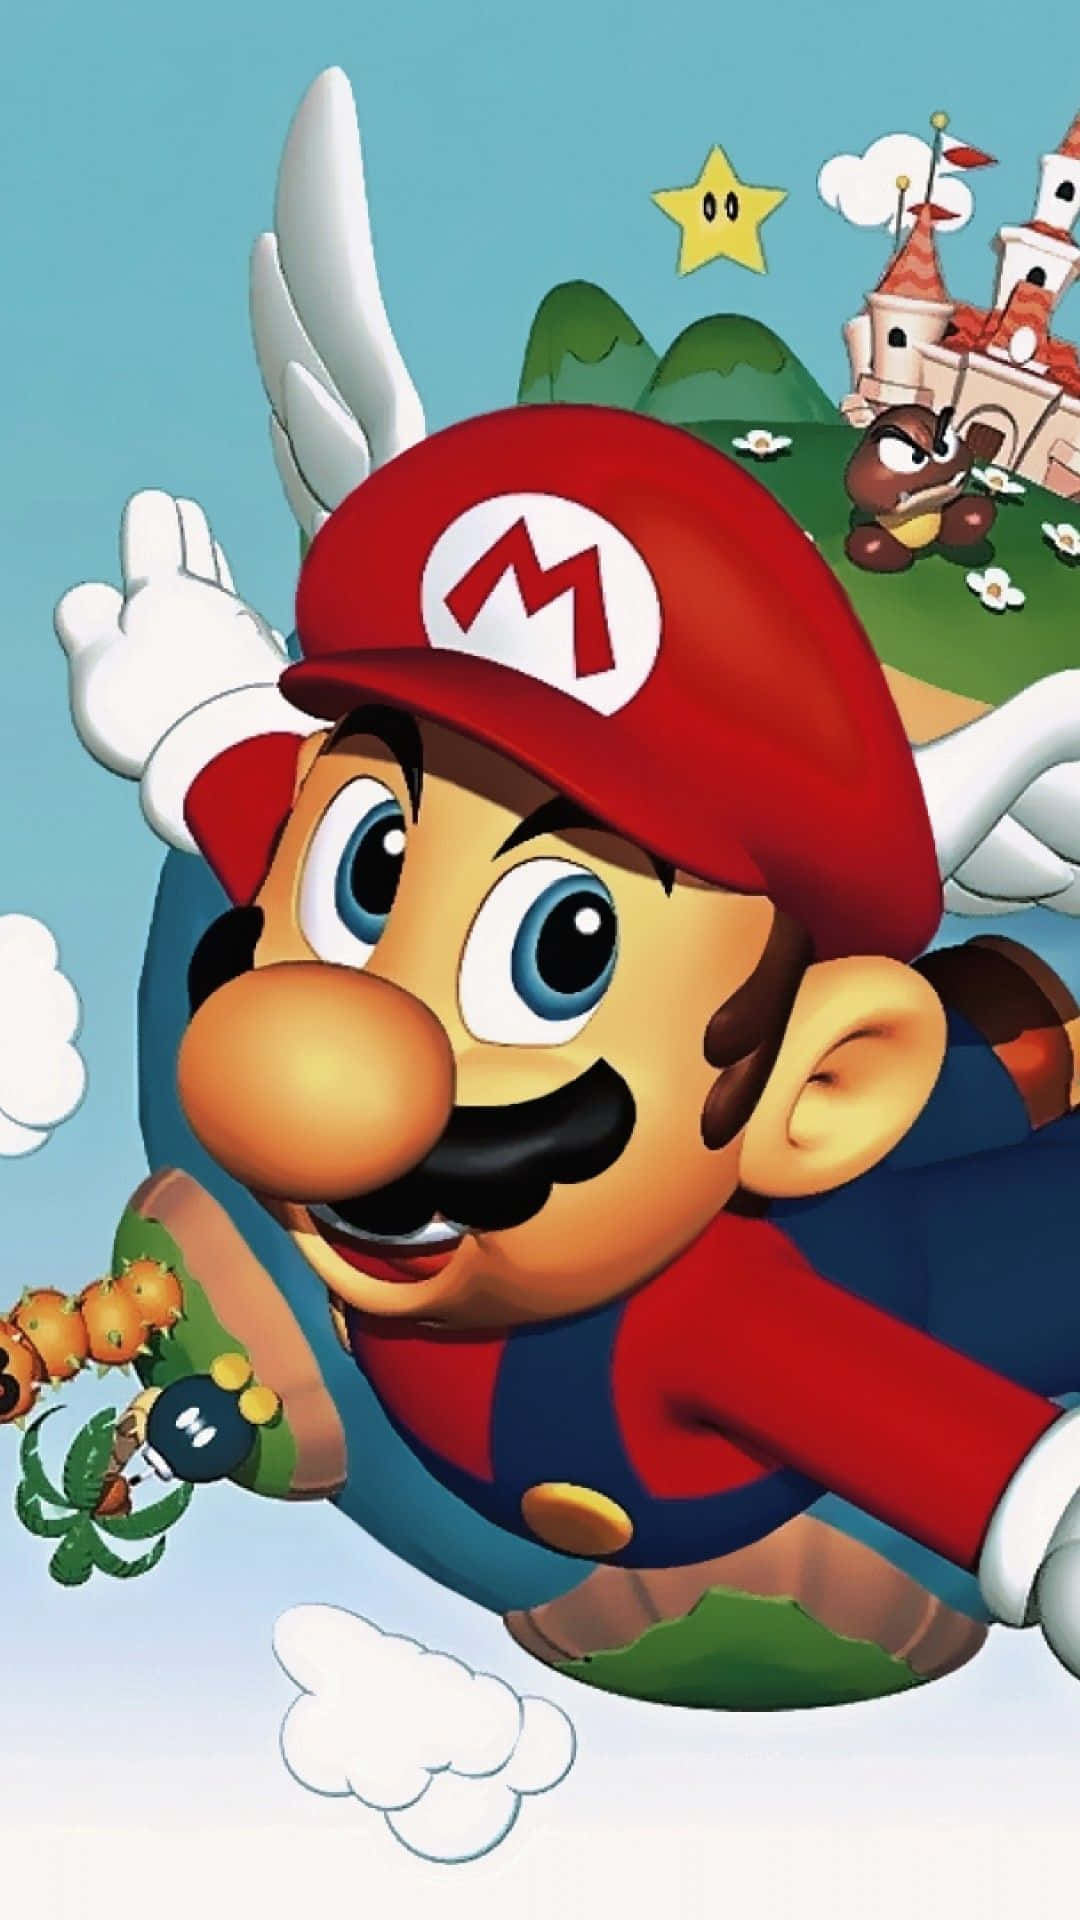 Consigueeste Increíble Nuevo Iphone De Super Mario Fondo de pantalla